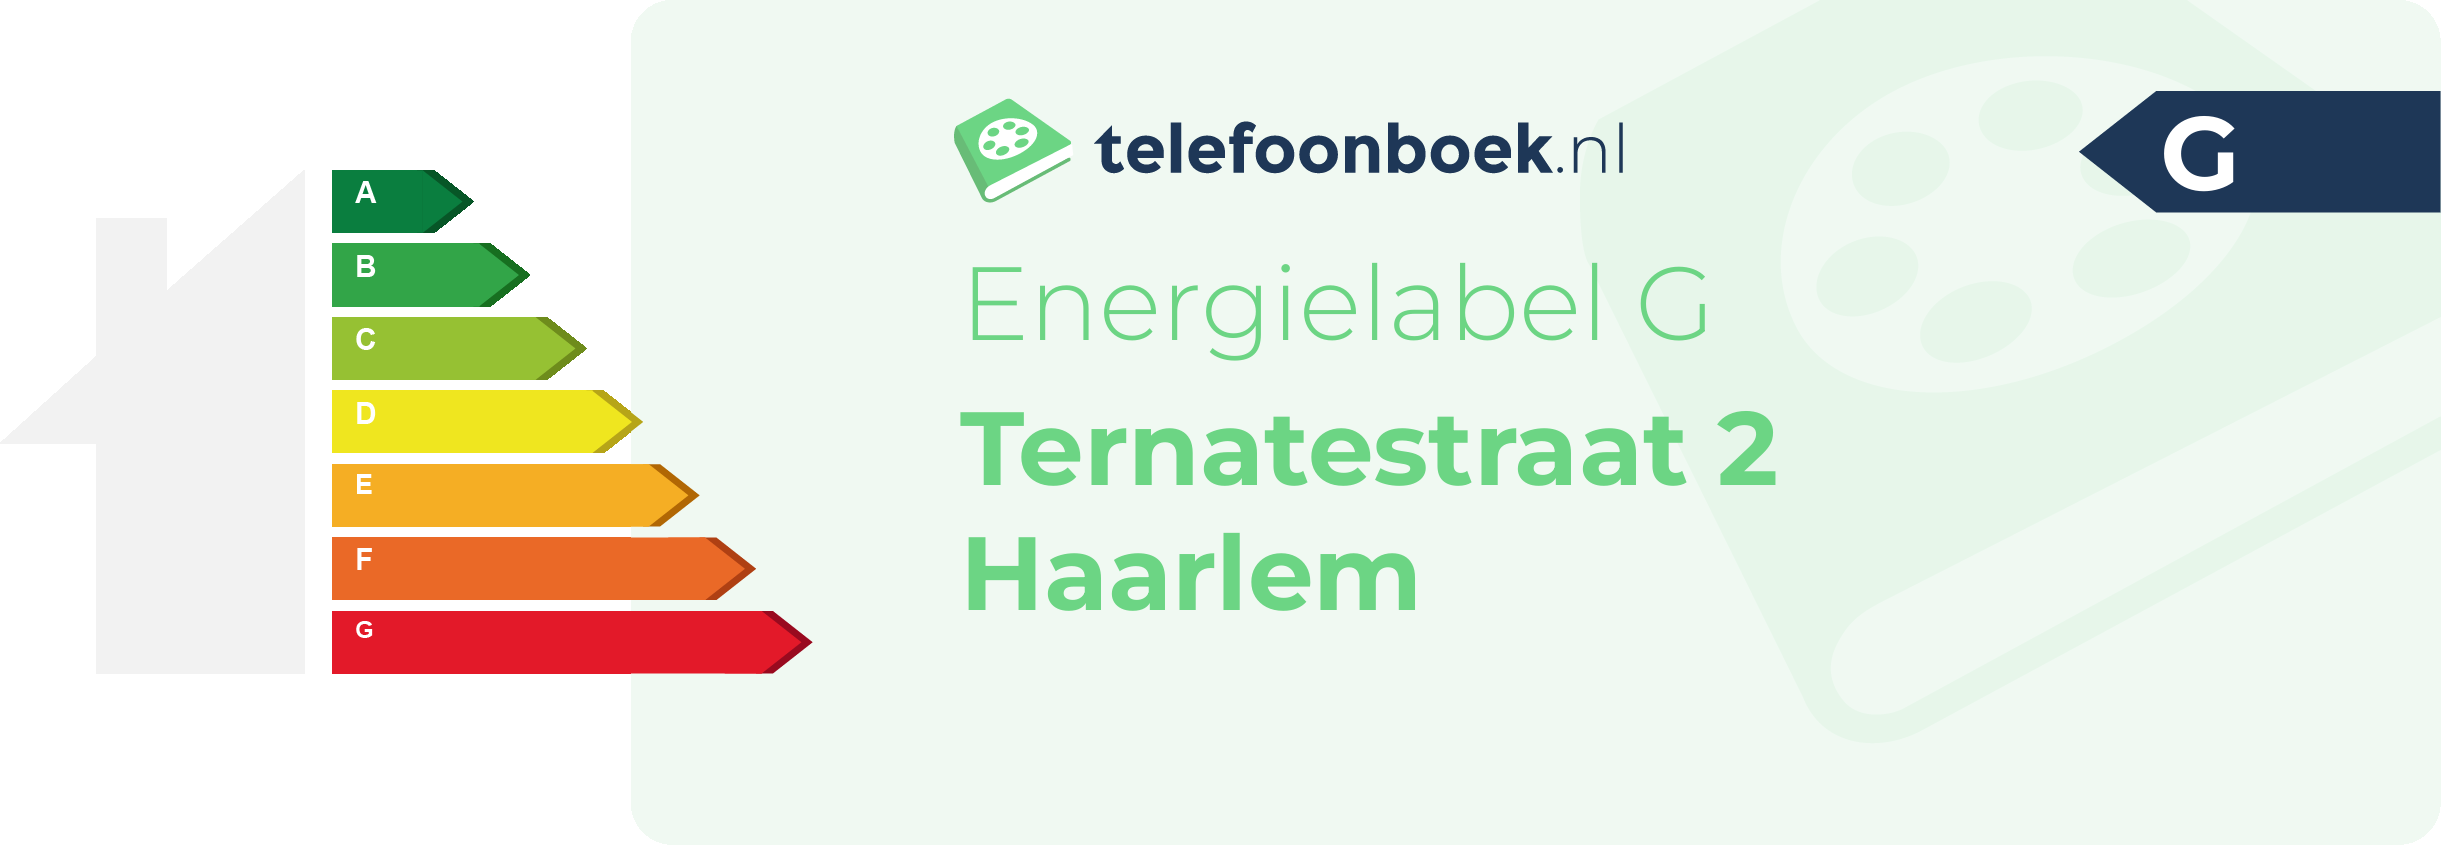 Energielabel Ternatestraat 2 Haarlem